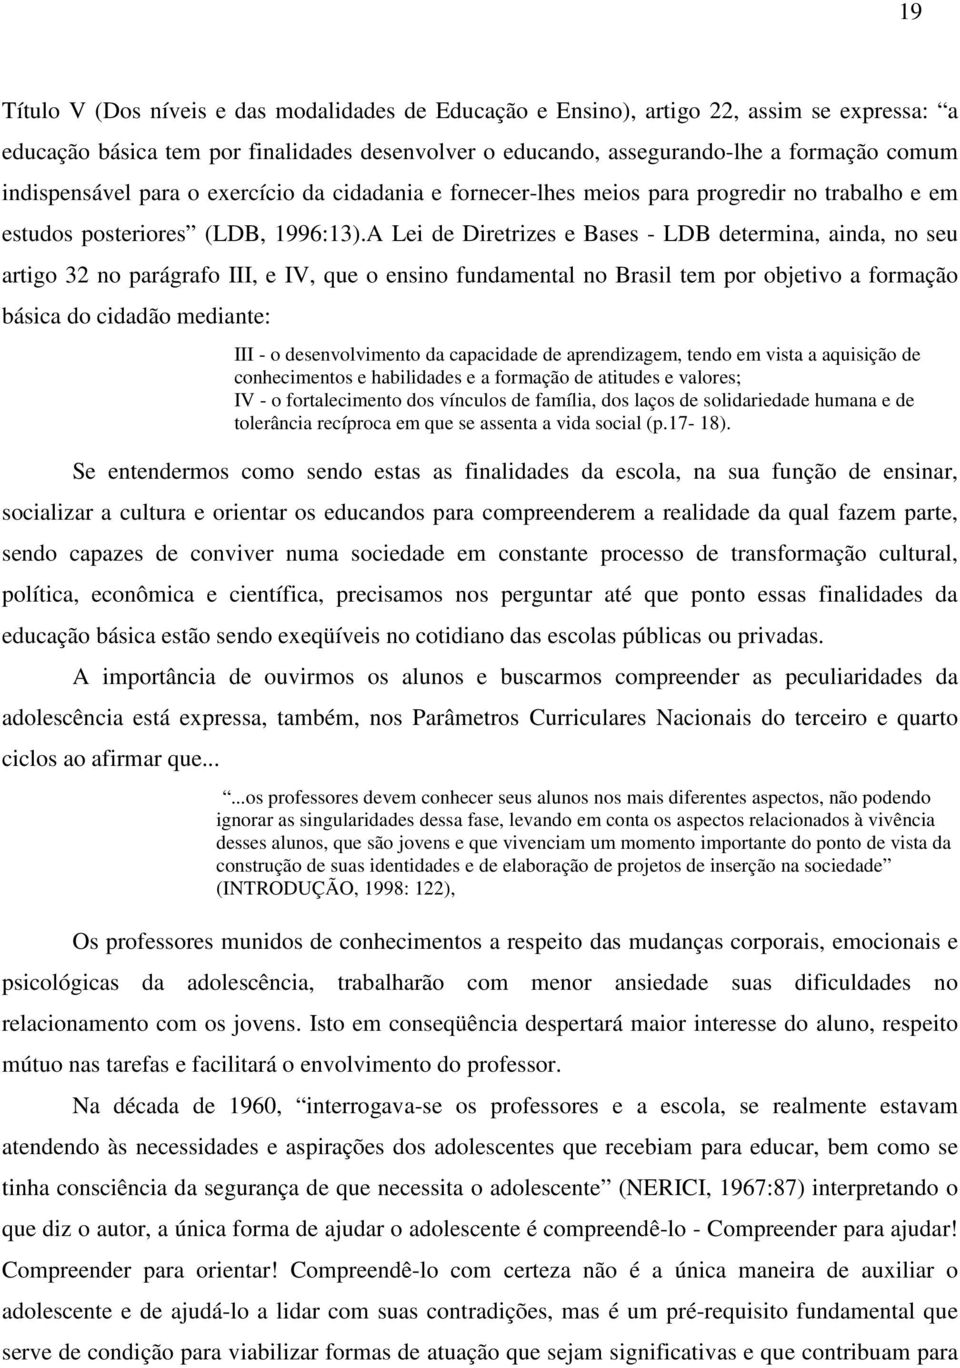 A Lei de Diretrizes e Bases - LDB determina, ainda, no seu artigo 32 no parágrafo III, e IV, que o ensino fundamental no Brasil tem por objetivo a formação básica do cidadão mediante: III - o